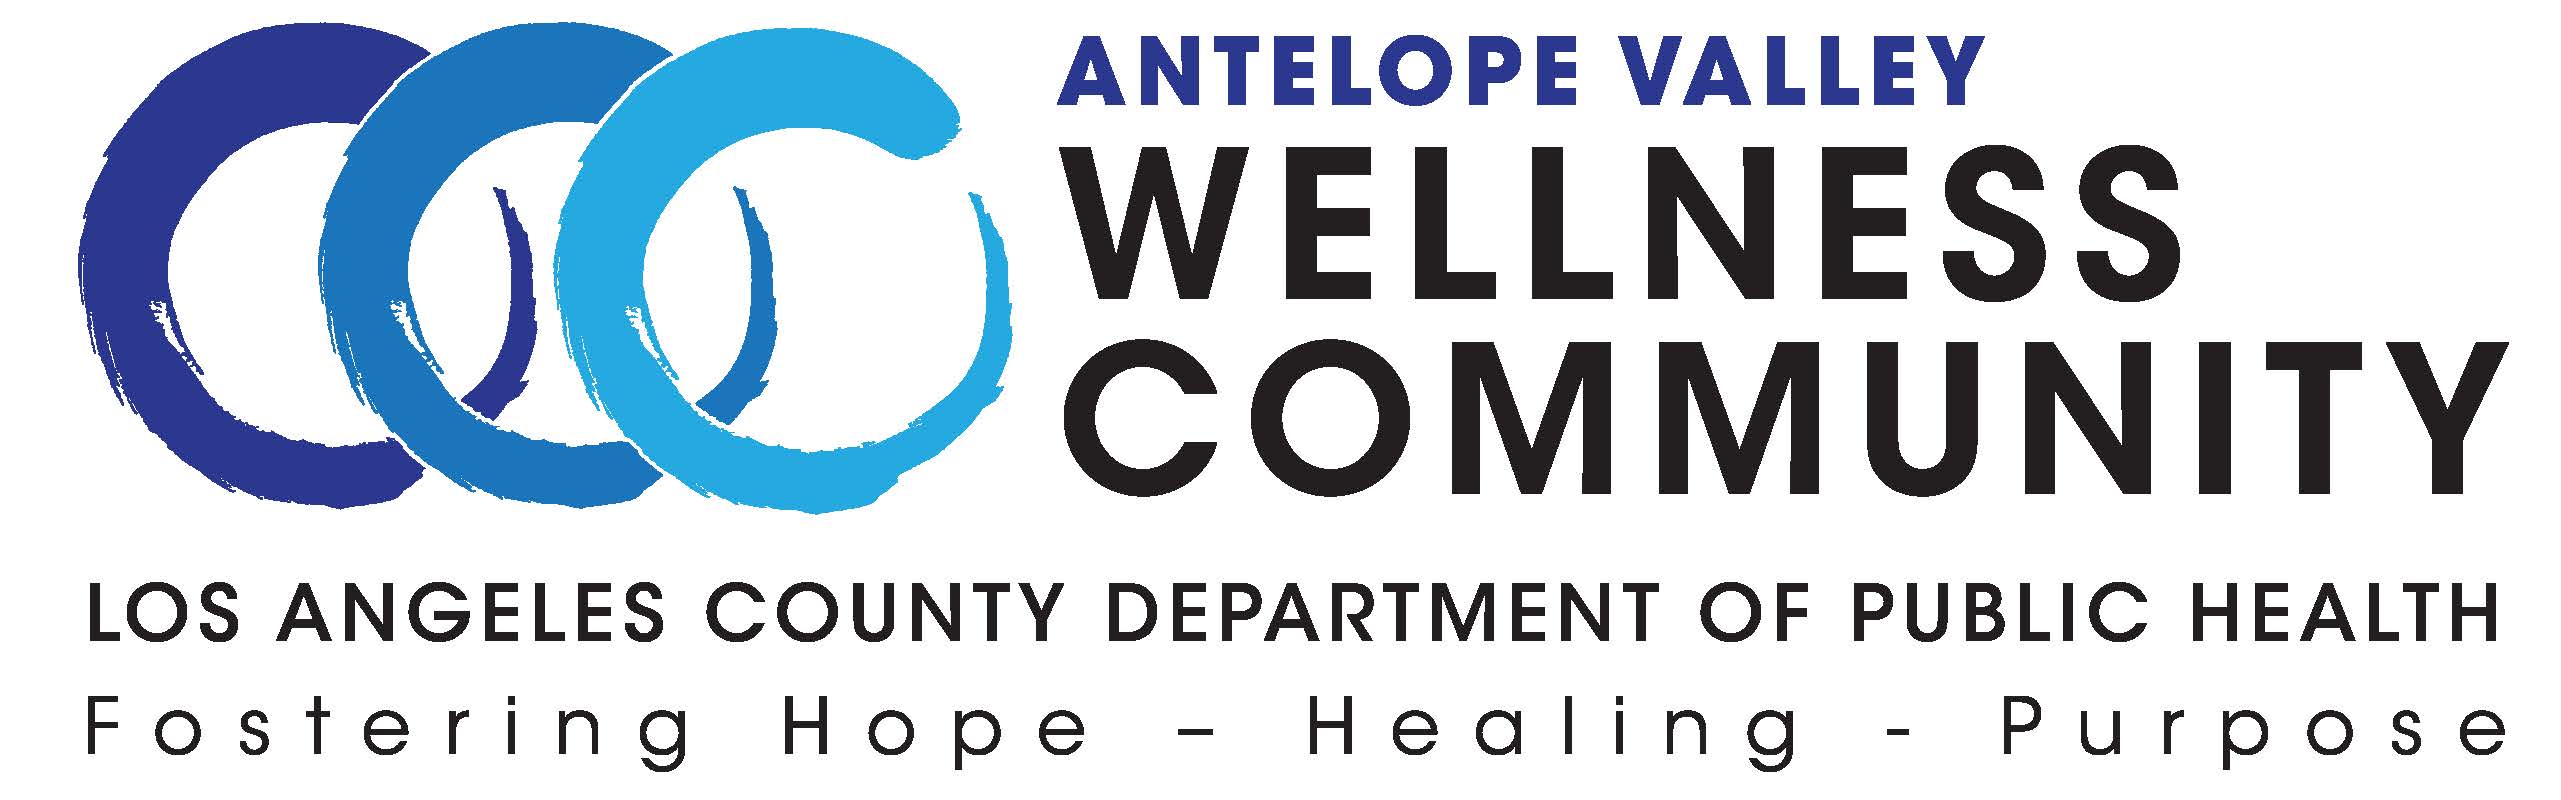 AV Wellness Community image and link